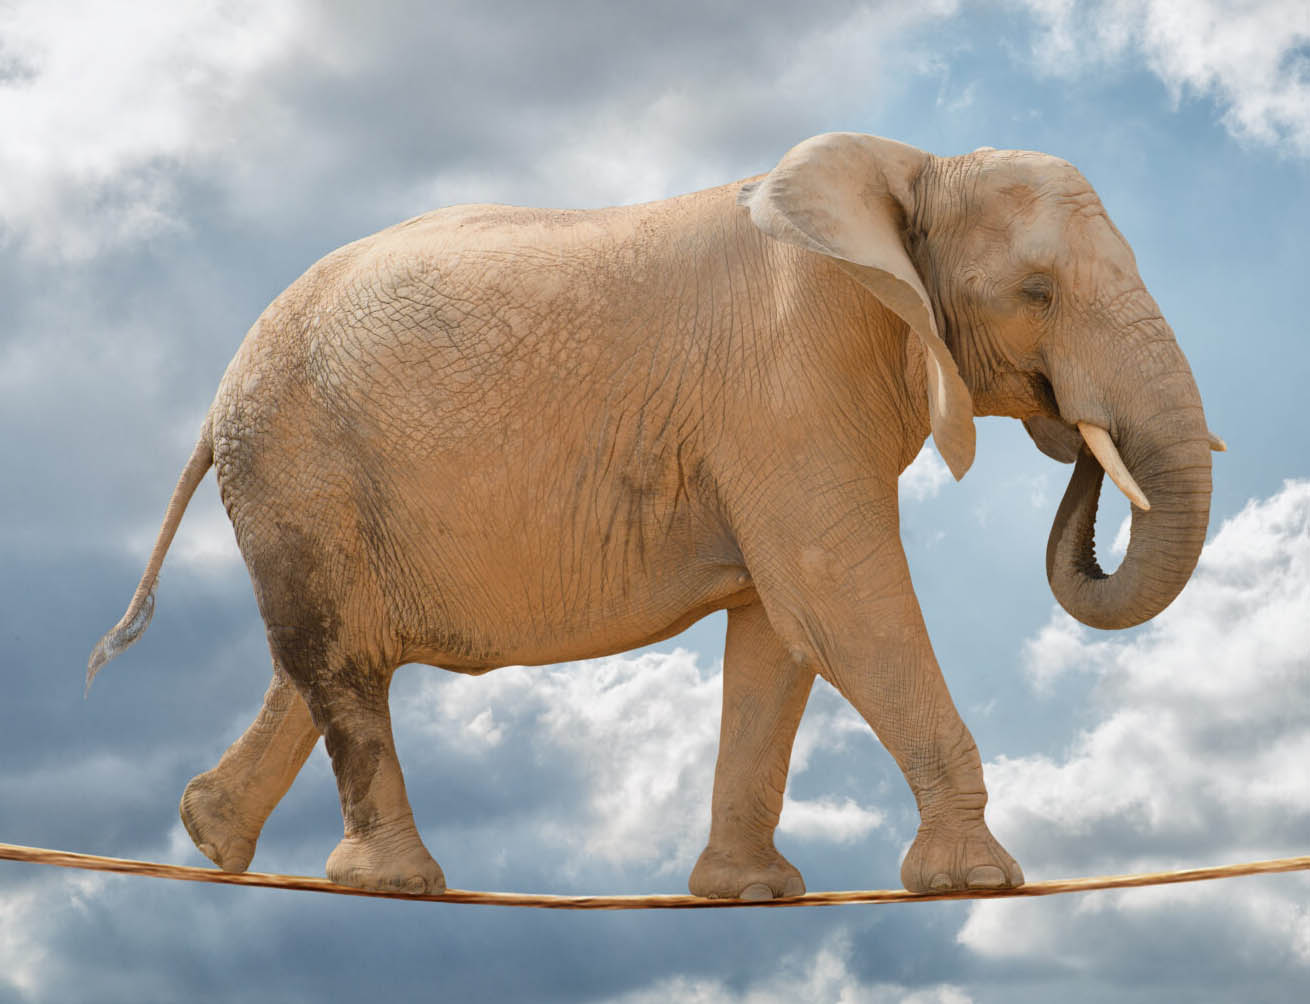 Elephant on a rope